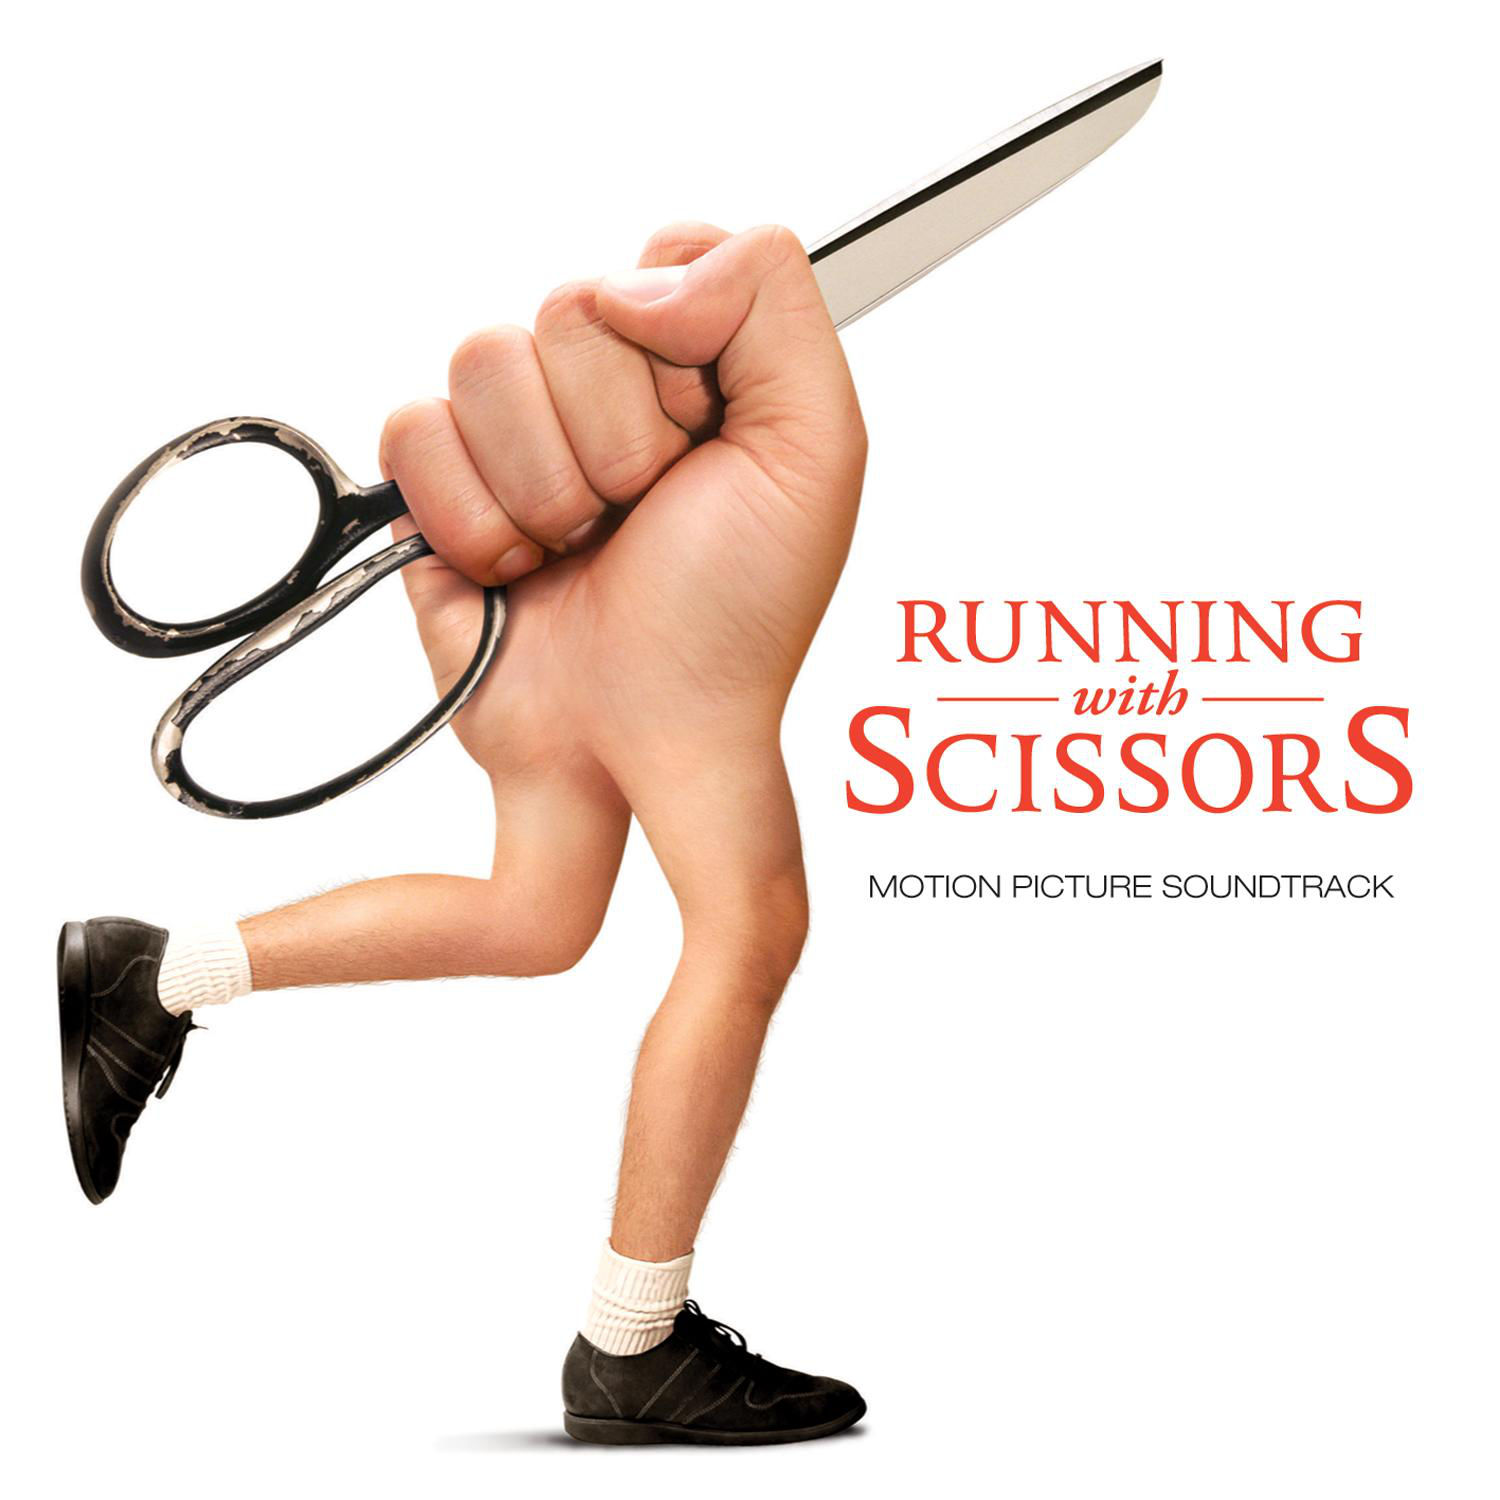 Scissors game. Running with Scissors. Руки ножницы. Running with Scissors Postal. RWS Running with Scissors.